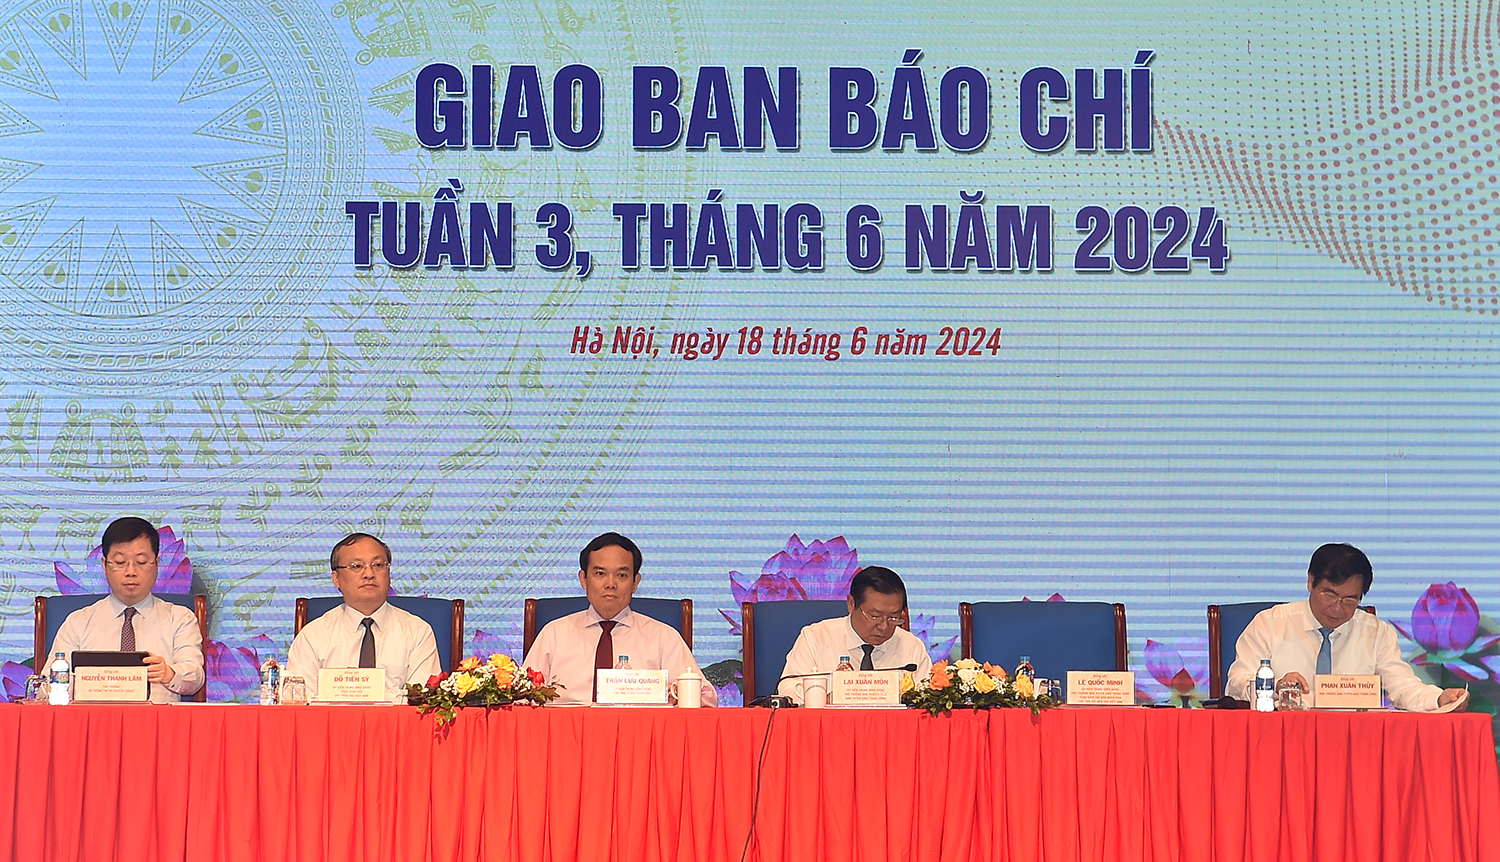 Phó Thủ tướng Trần Lưu Quang dự giao ban báo chí sáng ngày 18/6 tại Hà Nội - Ảnh: VGP/Hải Minh